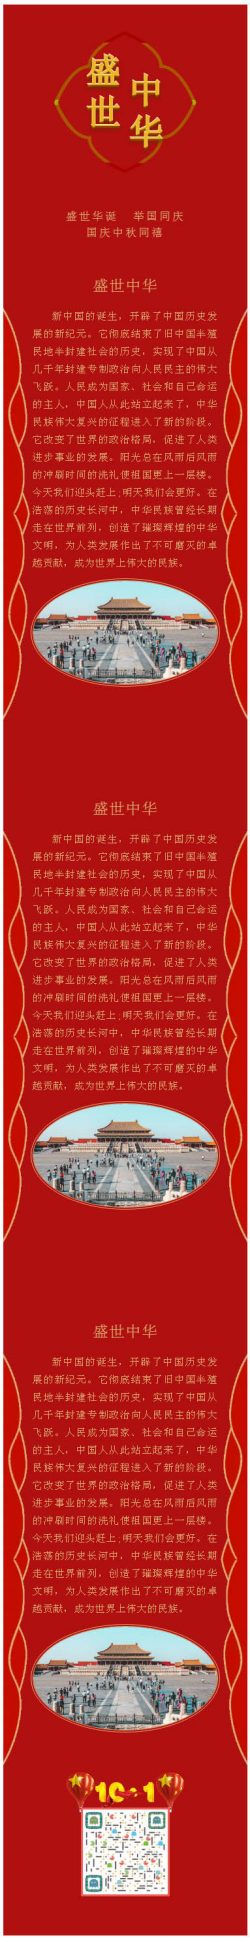 2020国庆中秋节红色喜庆微信公众号推文模板推送图文素材文章